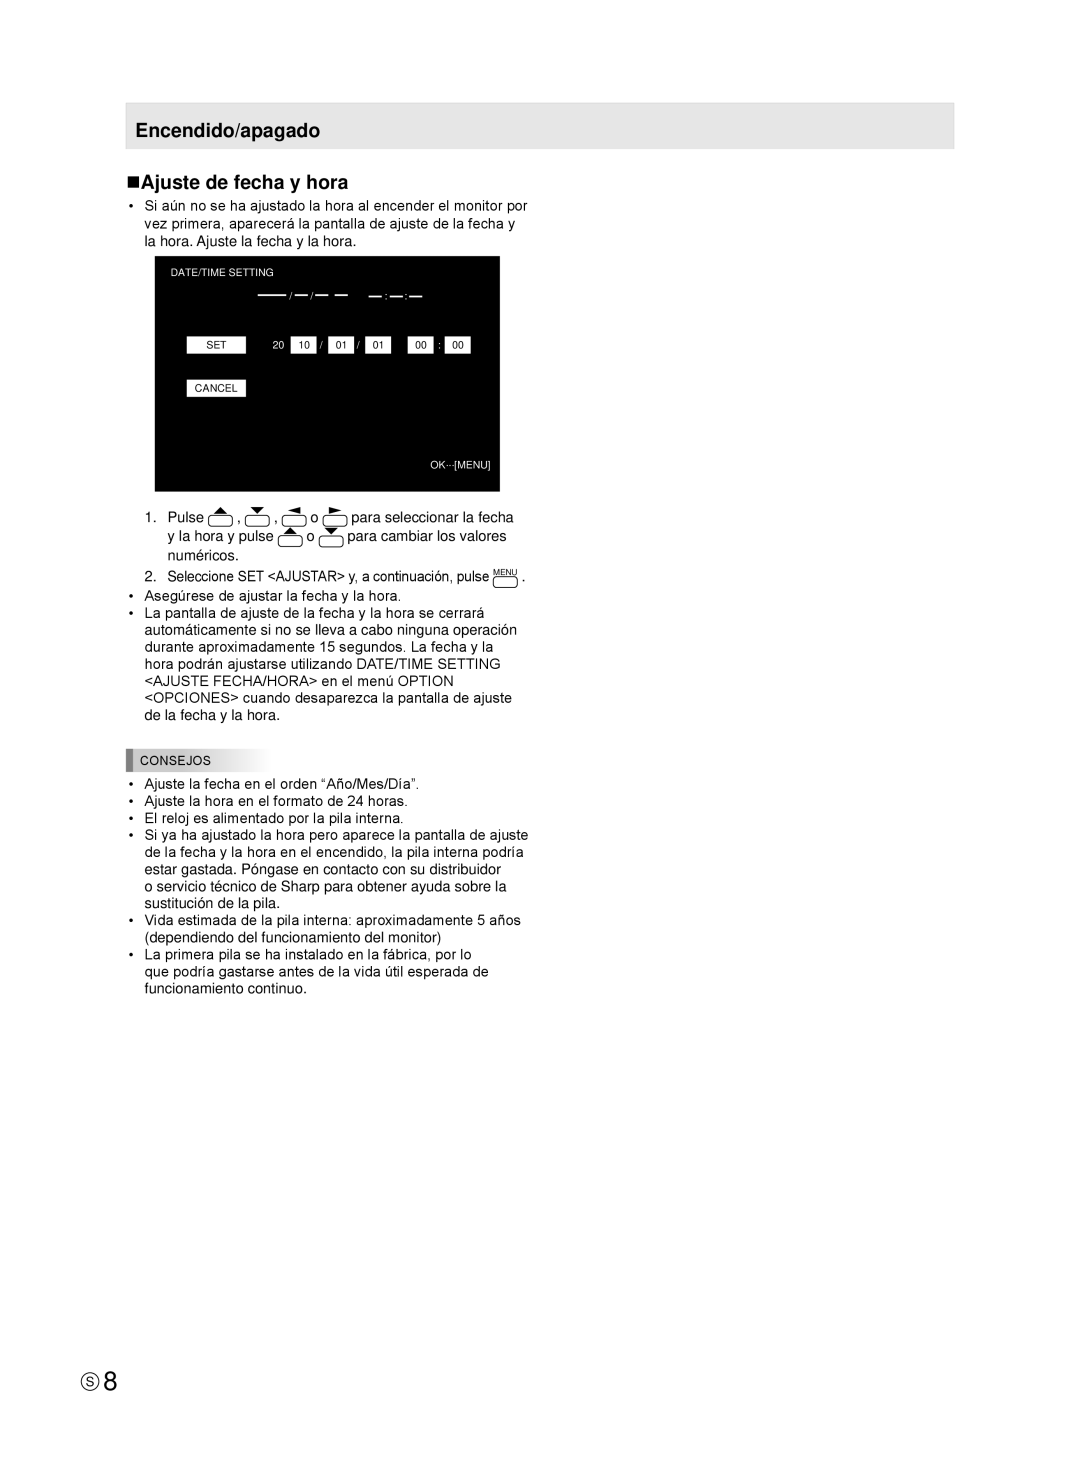 Sharp TINSE1181MPZZ(2) installation manual Encendido/apagado nAjuste de fecha y hora 